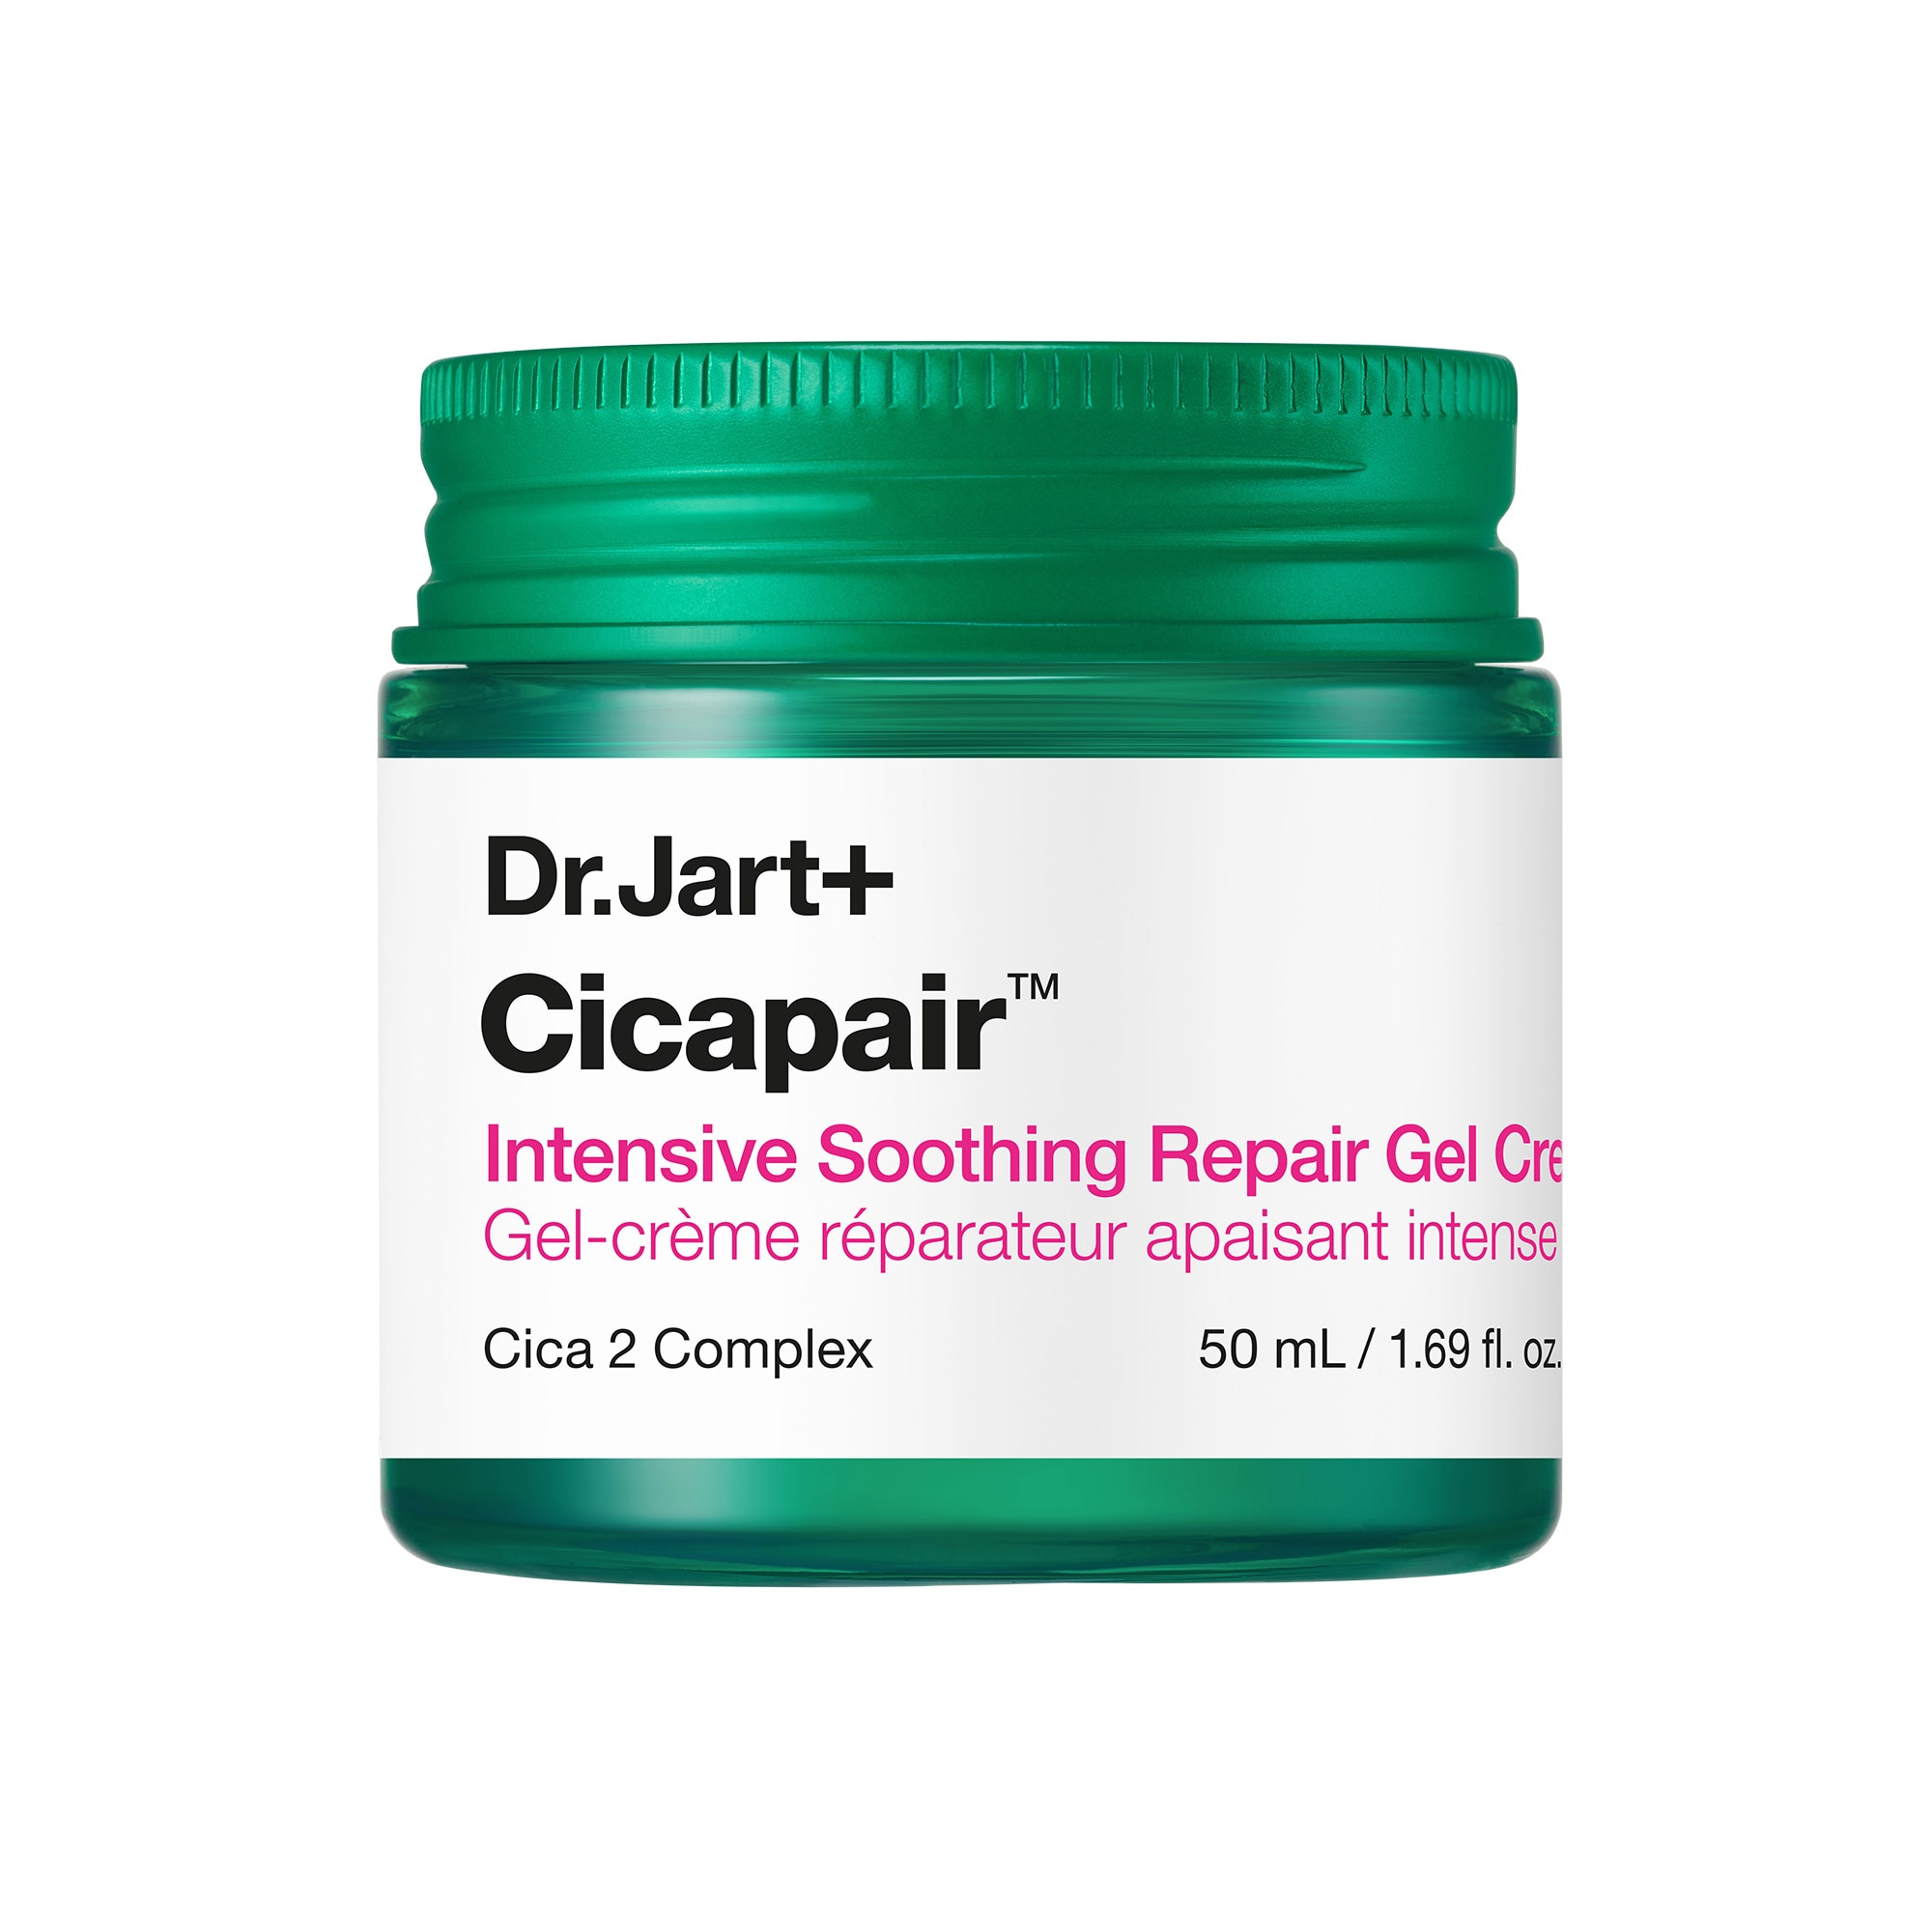 Cicapair™ Intensive Soothing Repair Gel Cream